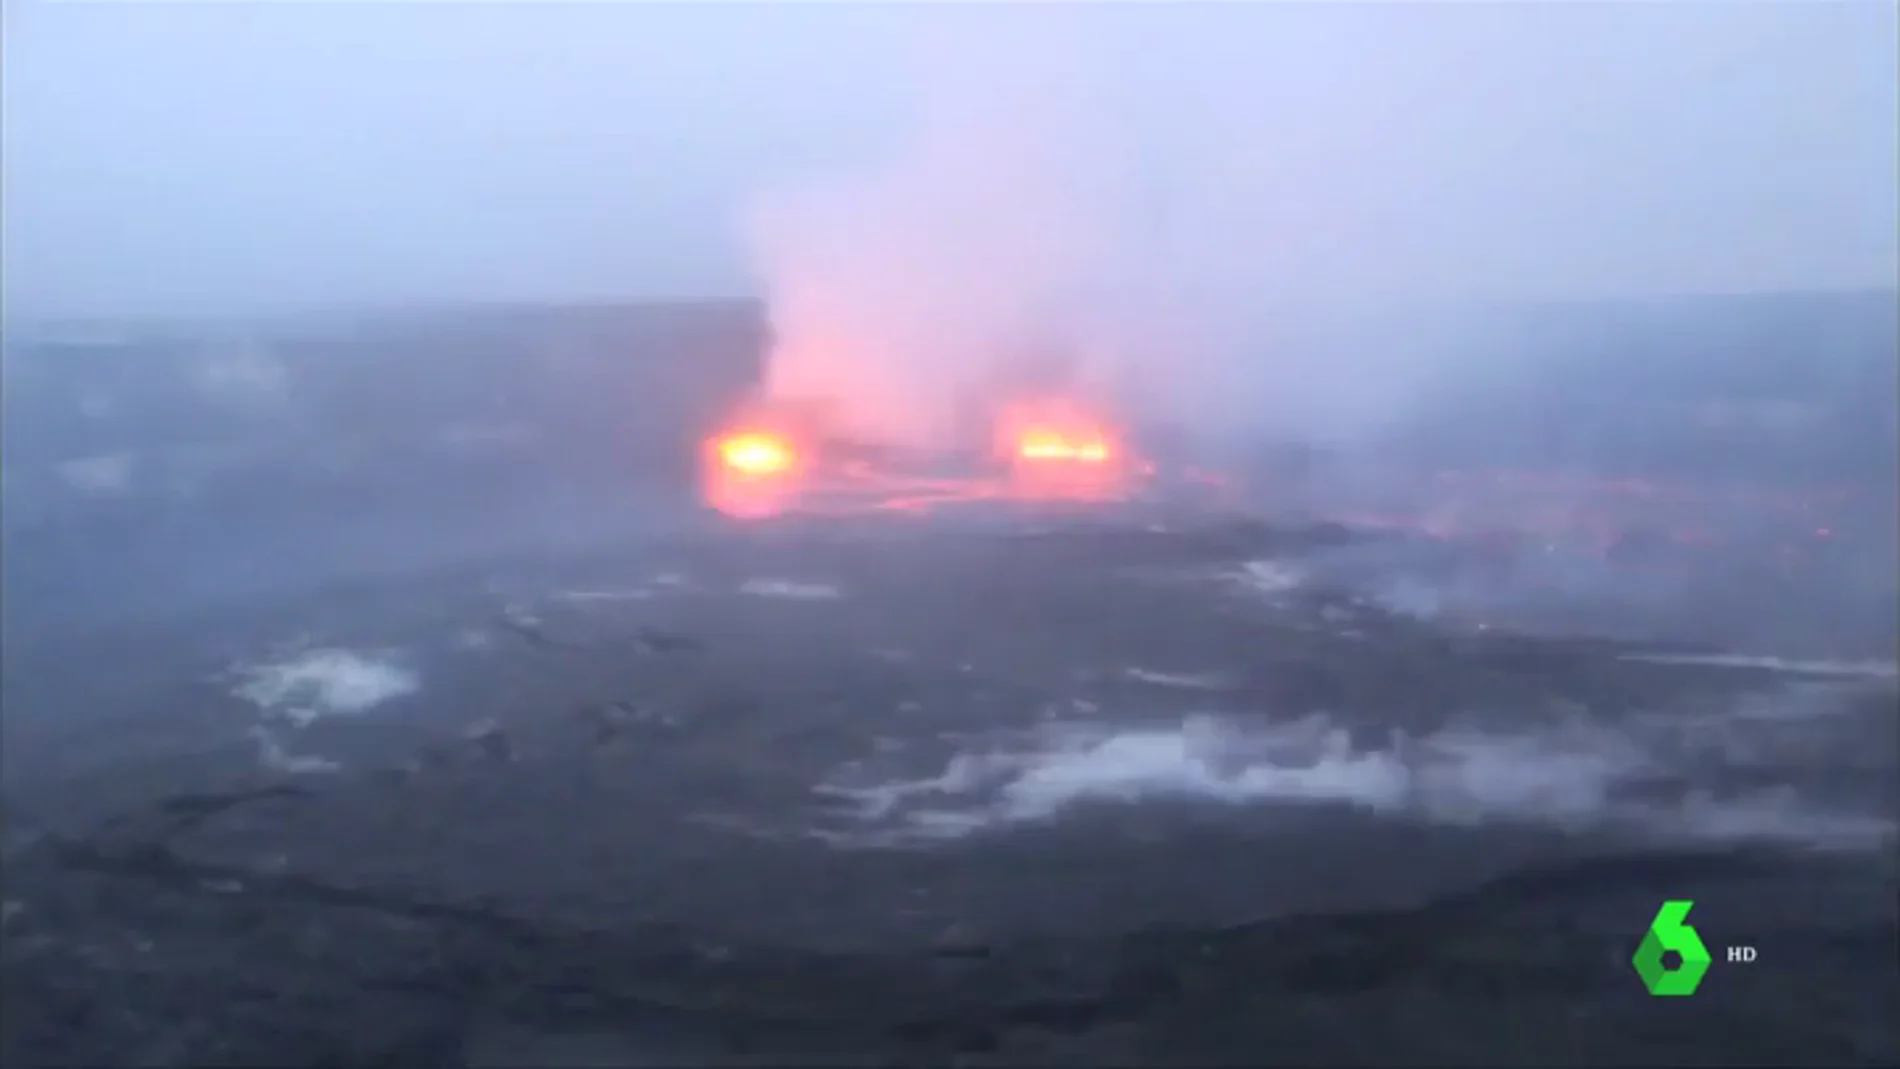 Hawái declara el estado de emergencia por la erupción del volcán Kilauea